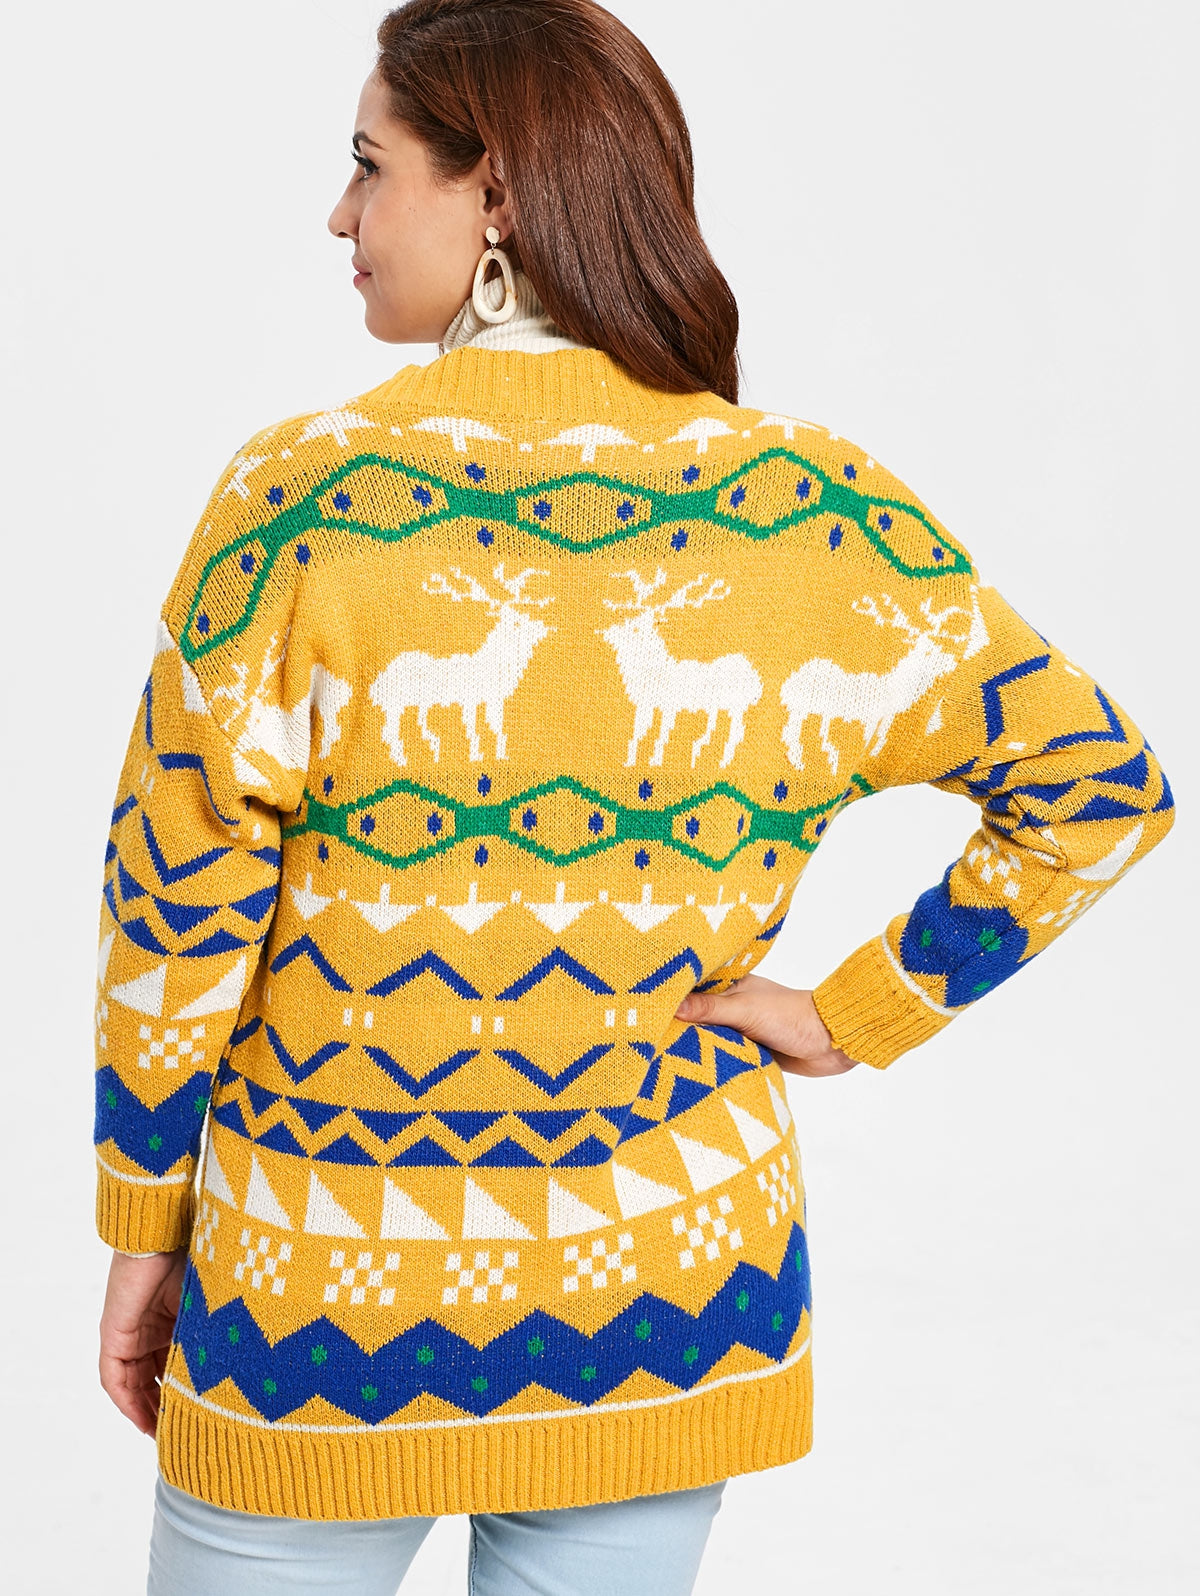 Plus Size Elk Print Christmas Button Cardigan - DromedarShop.com Online Boutique